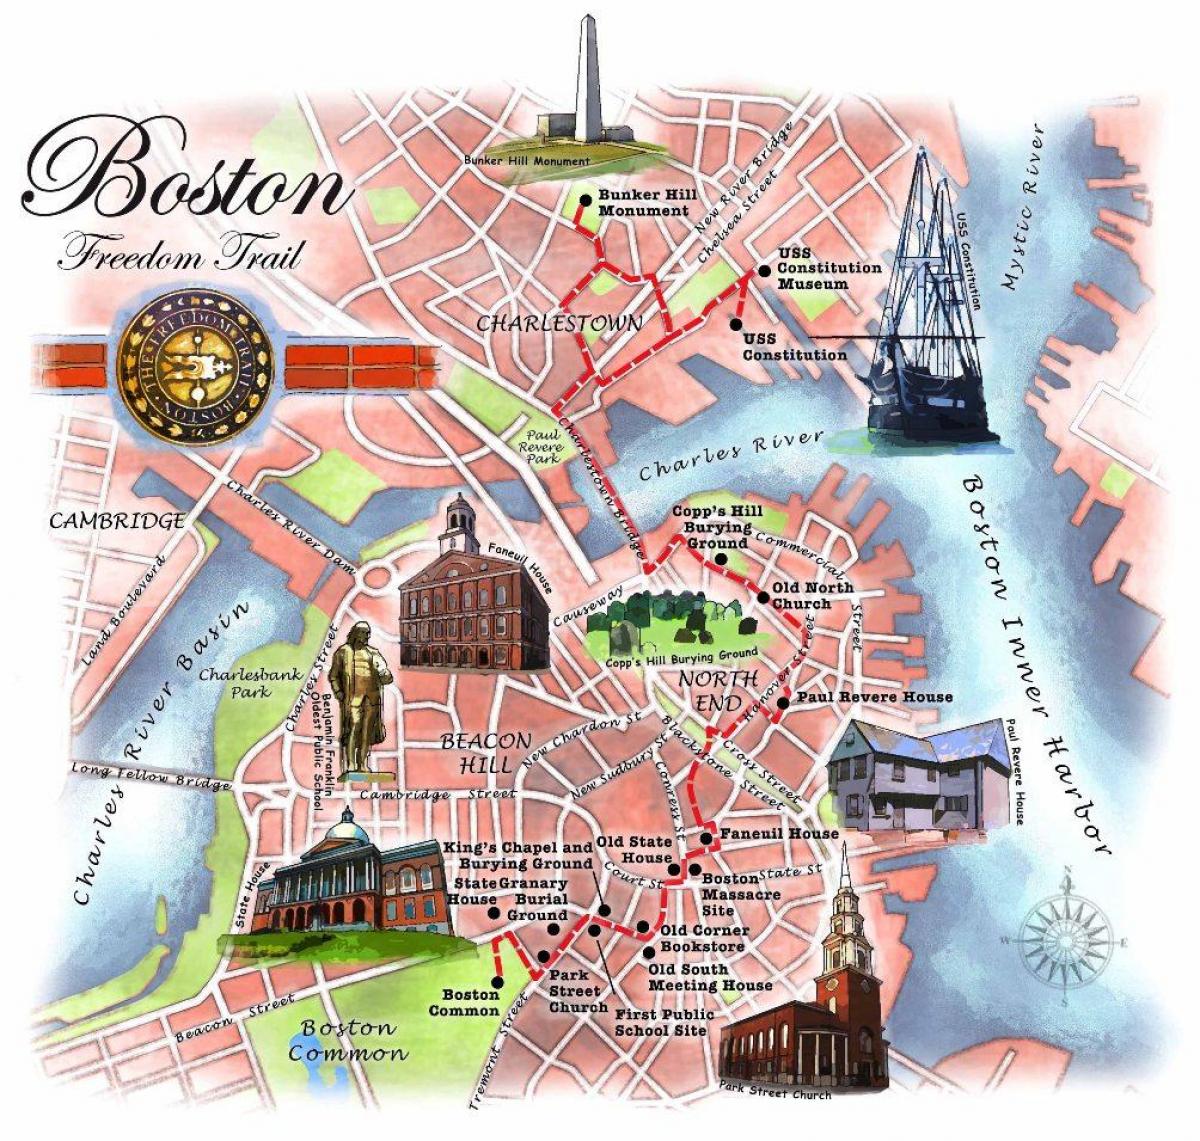 Boston Freedom Trail Map 